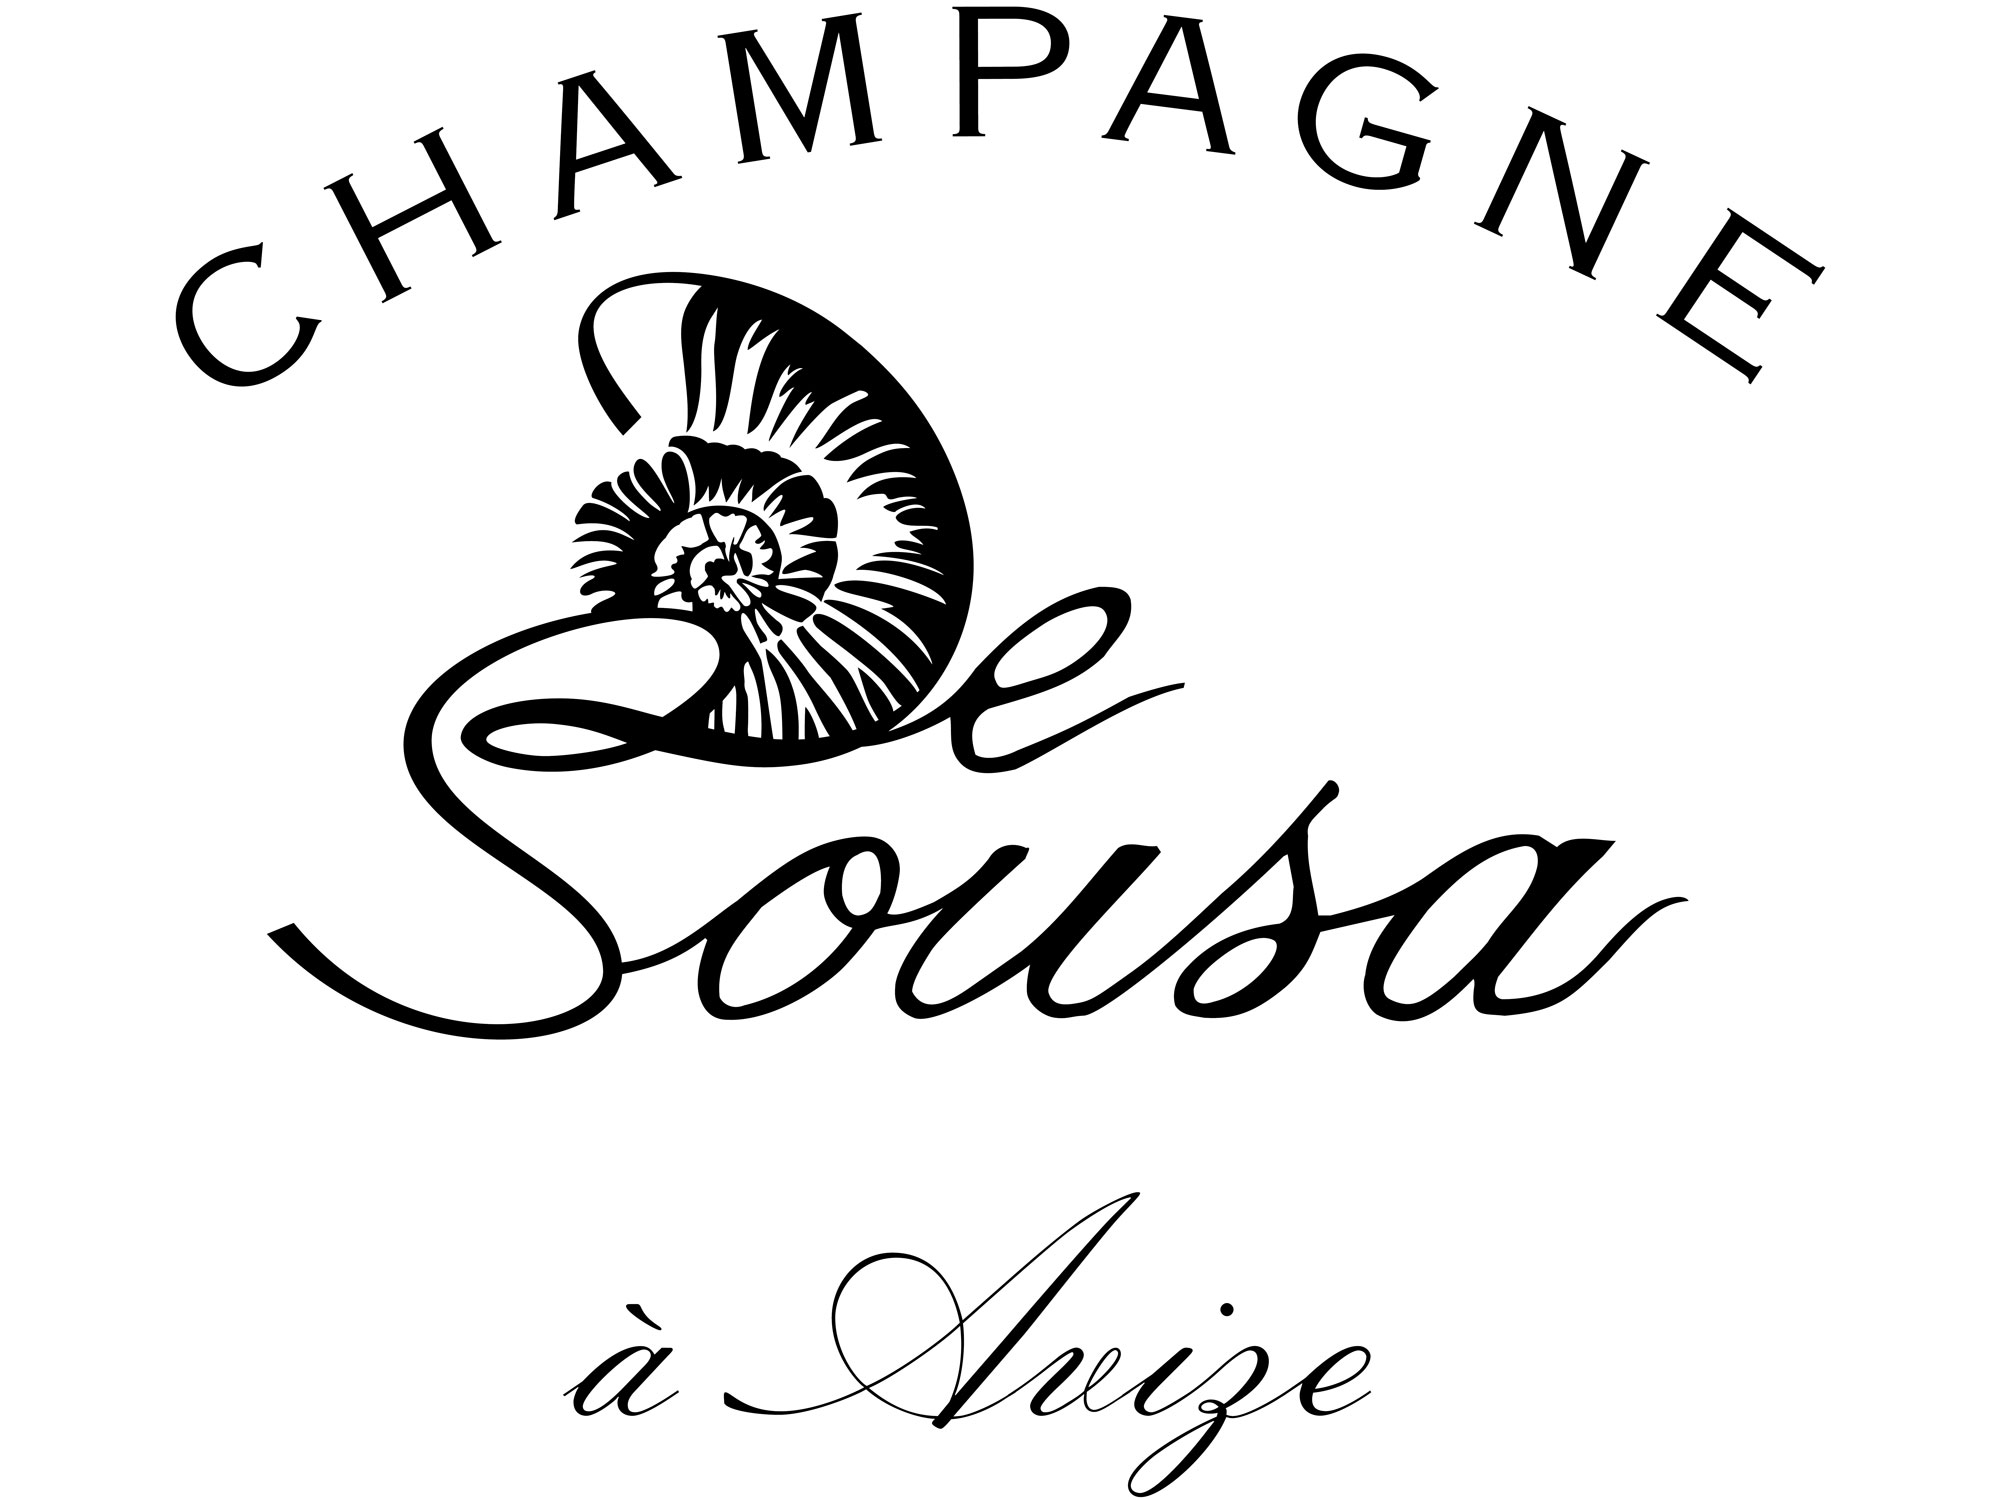 Champagne-de-sousa logo